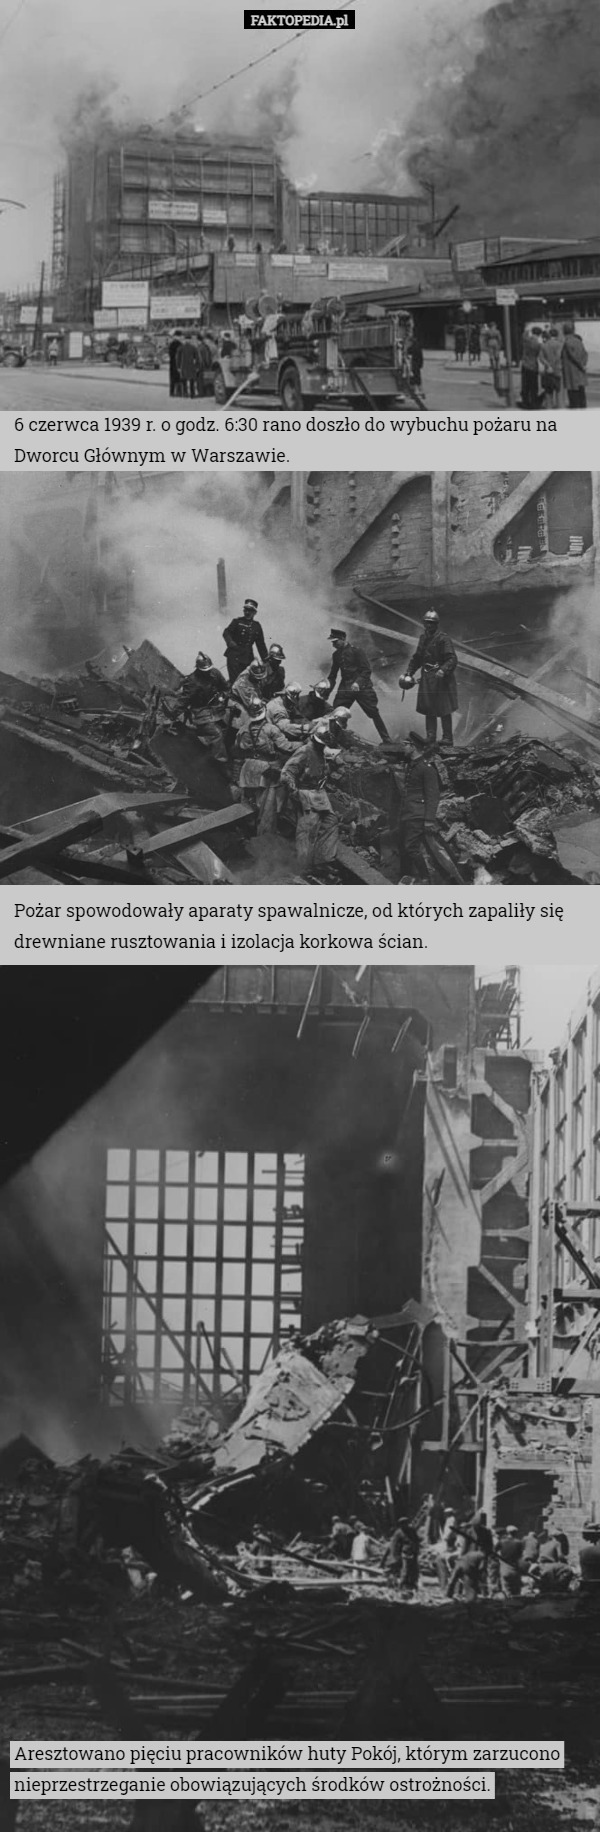 6 czerwca 1939 r. o godz. 6:30 rano doszło do wybuchu pożaru na Dworcu Głównym w Warszawie. Pożar spowodowały aparaty spawalnicze, od których zapaliły się drewniane rusztowania i izolacja korkowa ścian. Aresztowano pięciu pracowników huty Pokój, którym zarzucono nieprzestrzeganie obowiązujących środków ostrożności. 